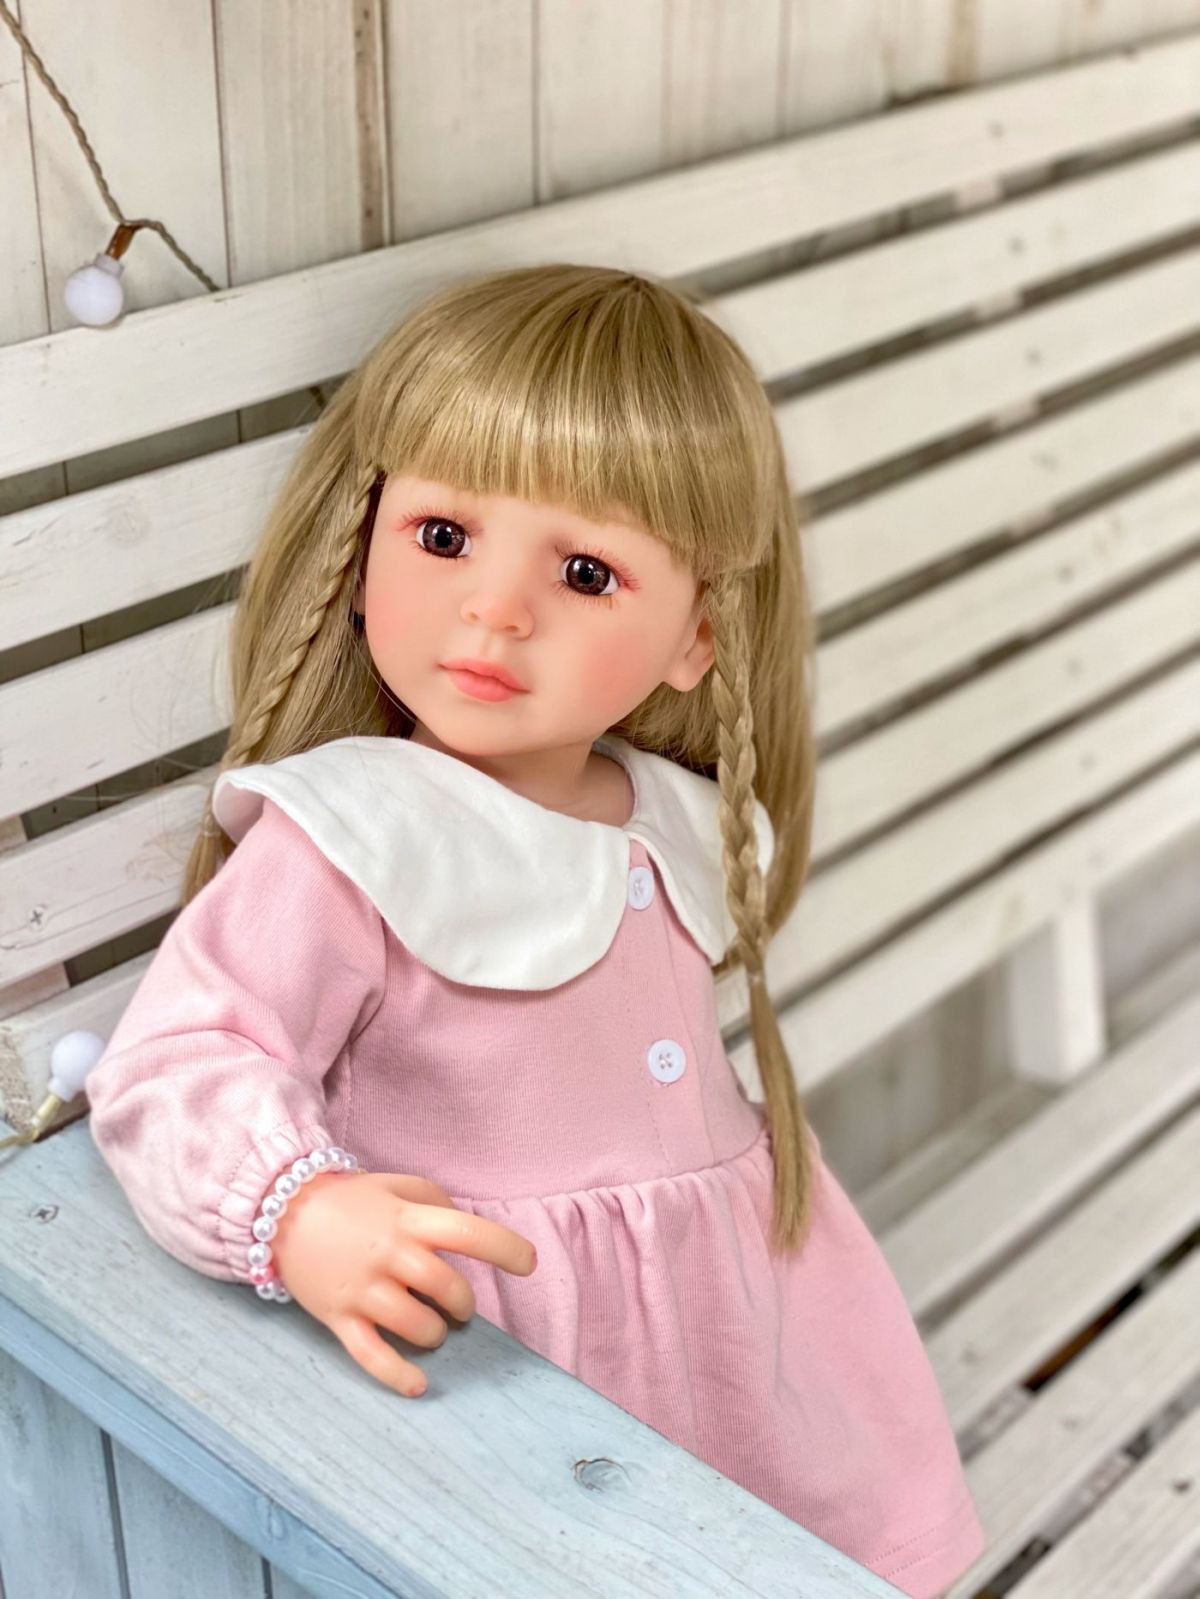 Reborn Baby Dolls Silicone Cute Soft Babies Doll Fashion Bebe Reborn Dolls 55cm Baby Toys for Girls (3)